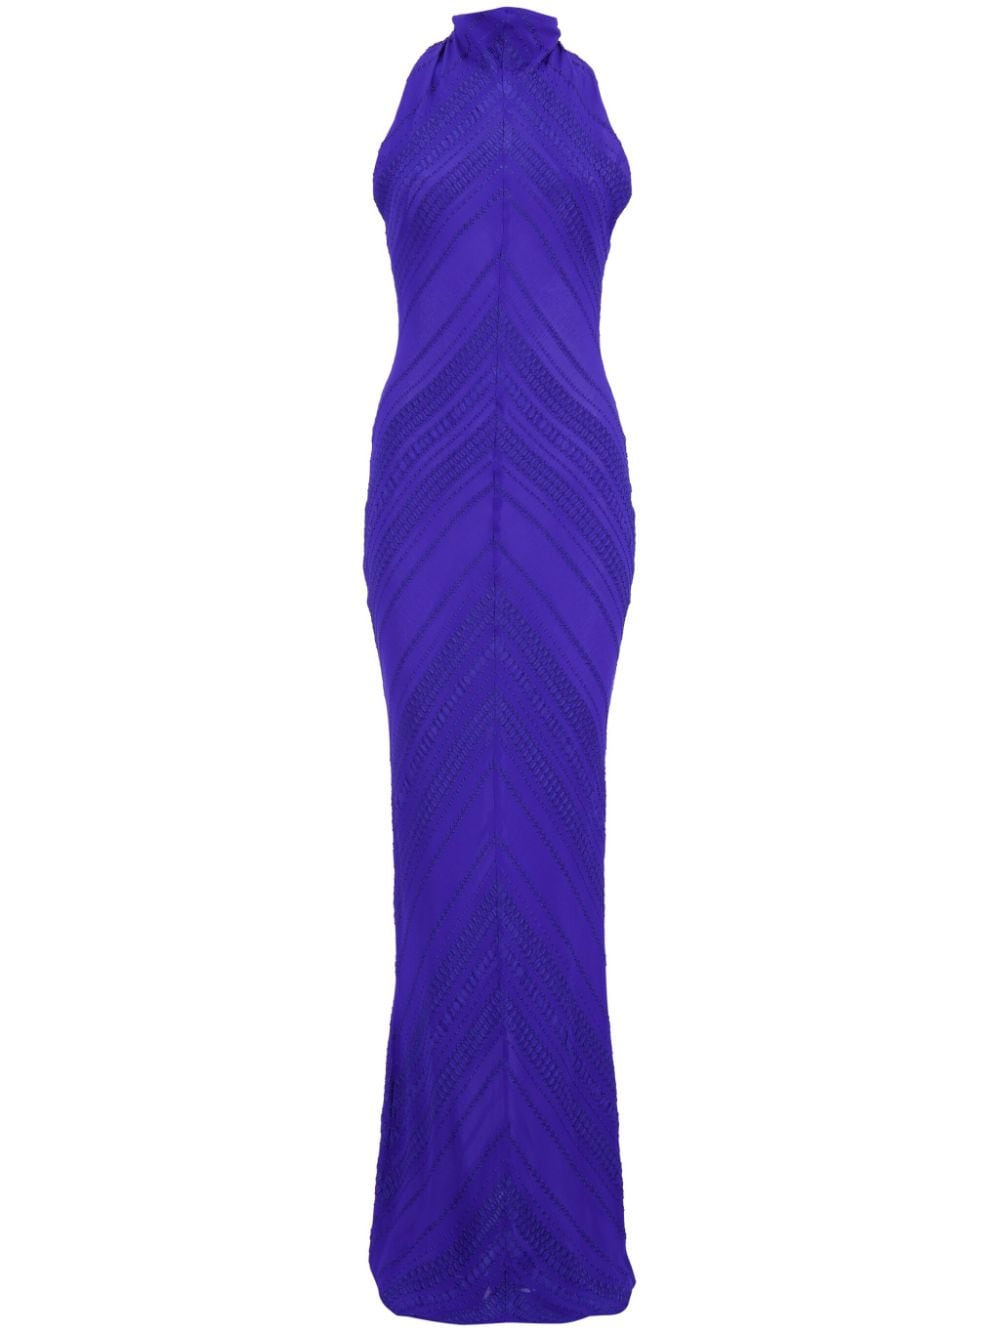 Zeus+Dione textured silk-blend dress